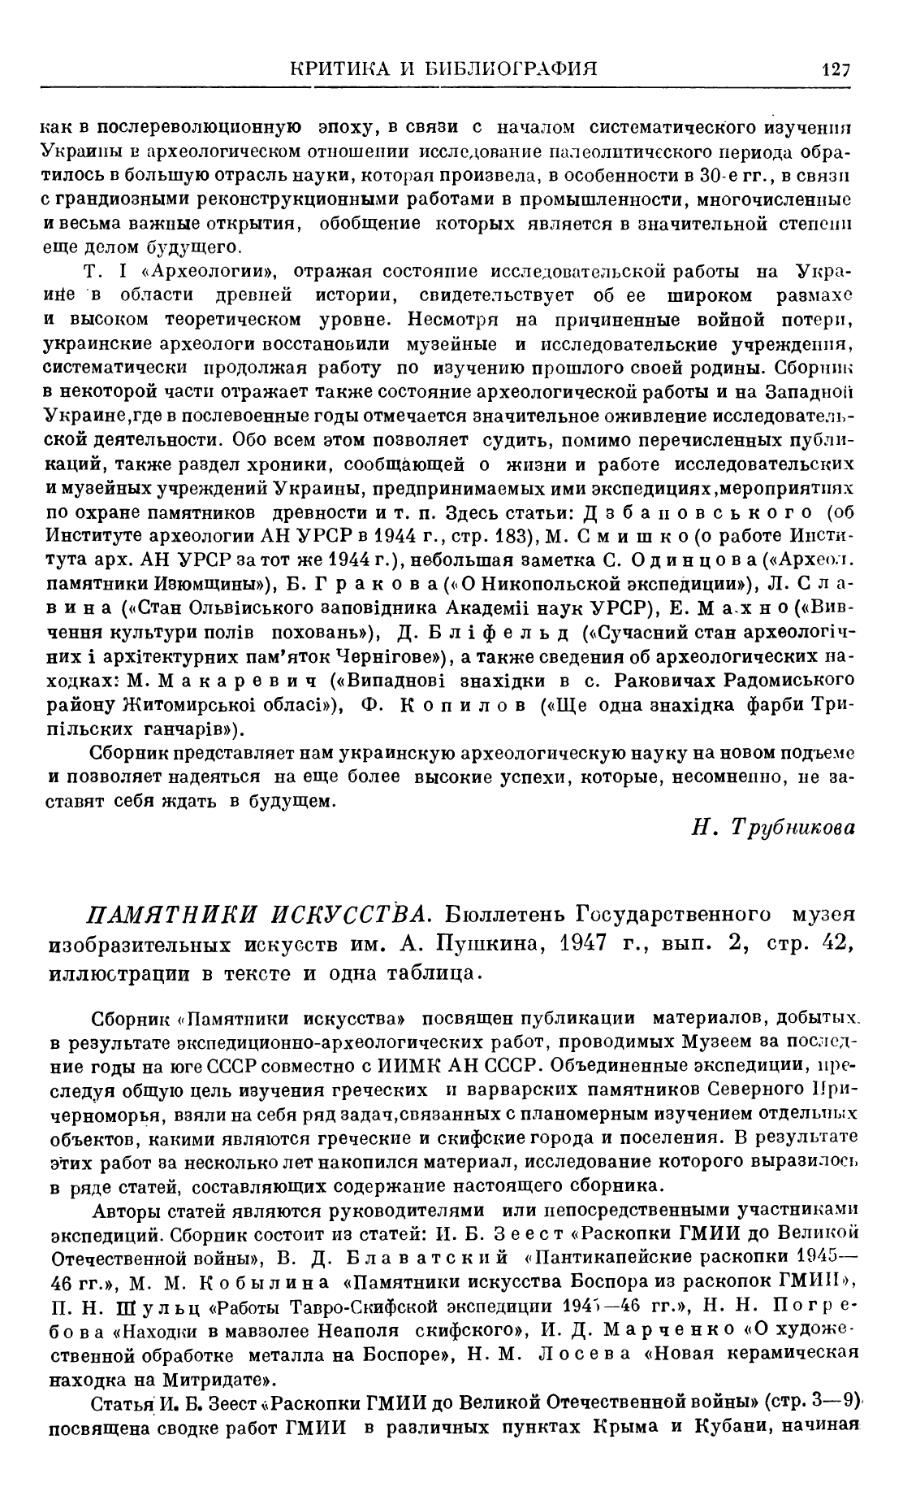 Я. В. Пятышева - Памятники искусств, изд. ГМИИ, № 2, 1947